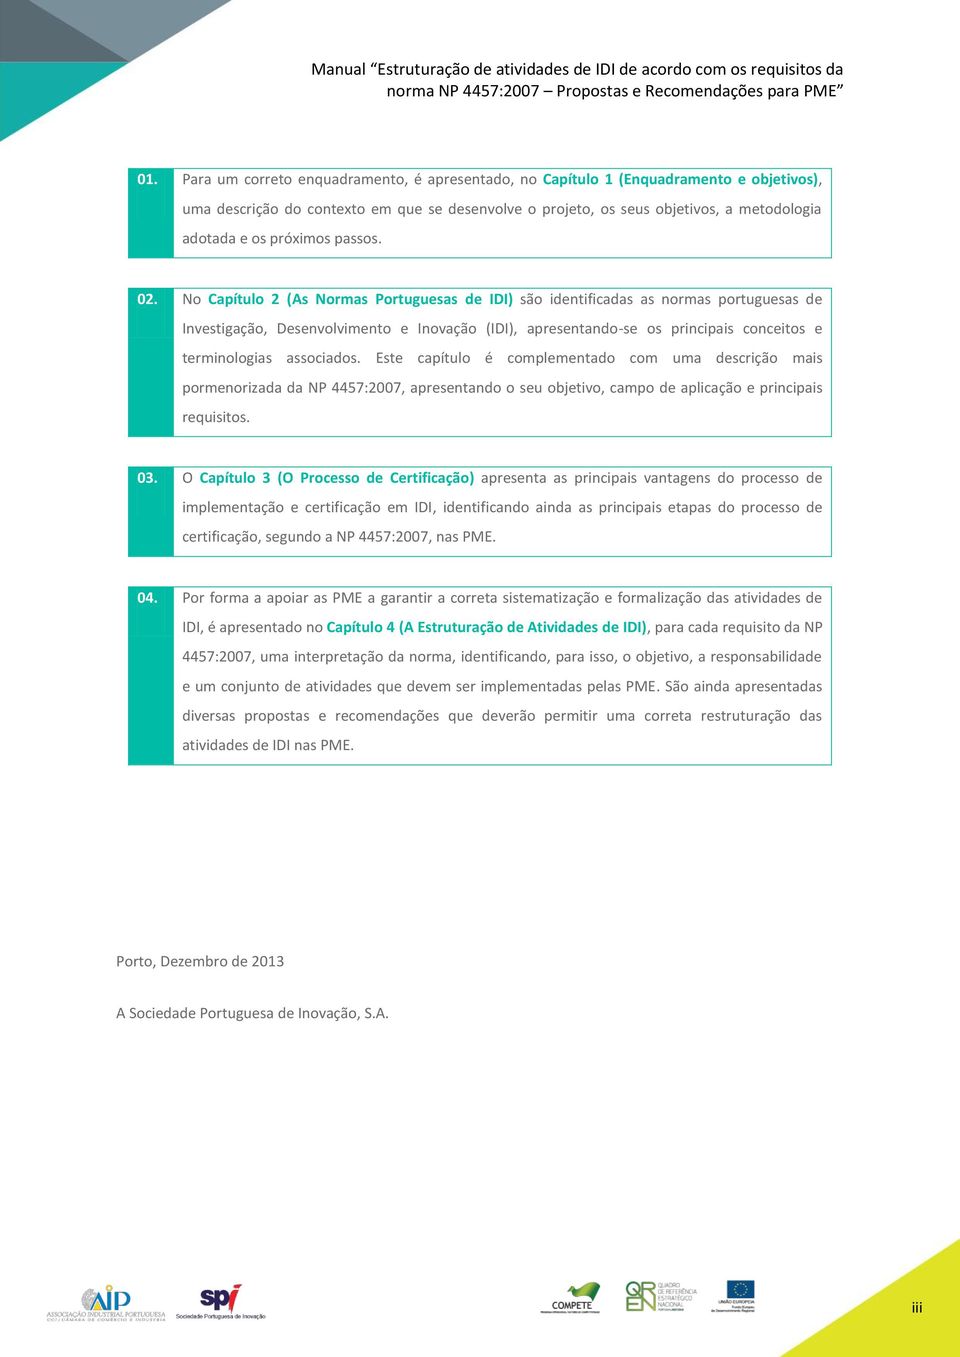 No Capítulo 2 (As Normas Portuguesas de IDI) são identificadas as normas portuguesas de Investigação, Desenvolvimento e Inovação (IDI), apresentando-se os principais conceitos e terminologias